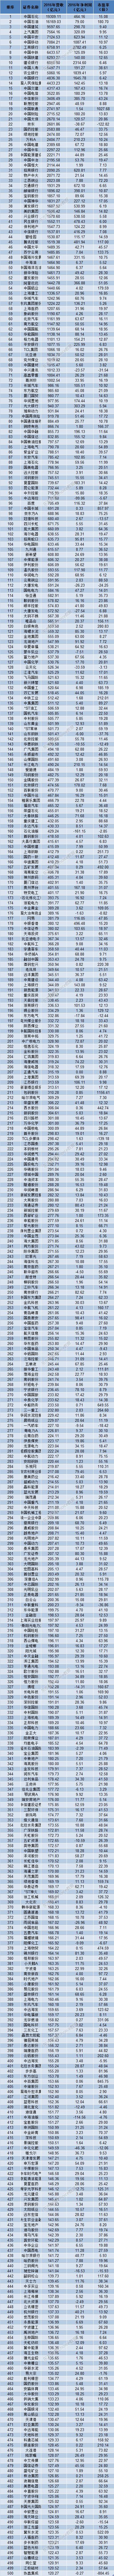 2017年中国上市公司500强排行榜